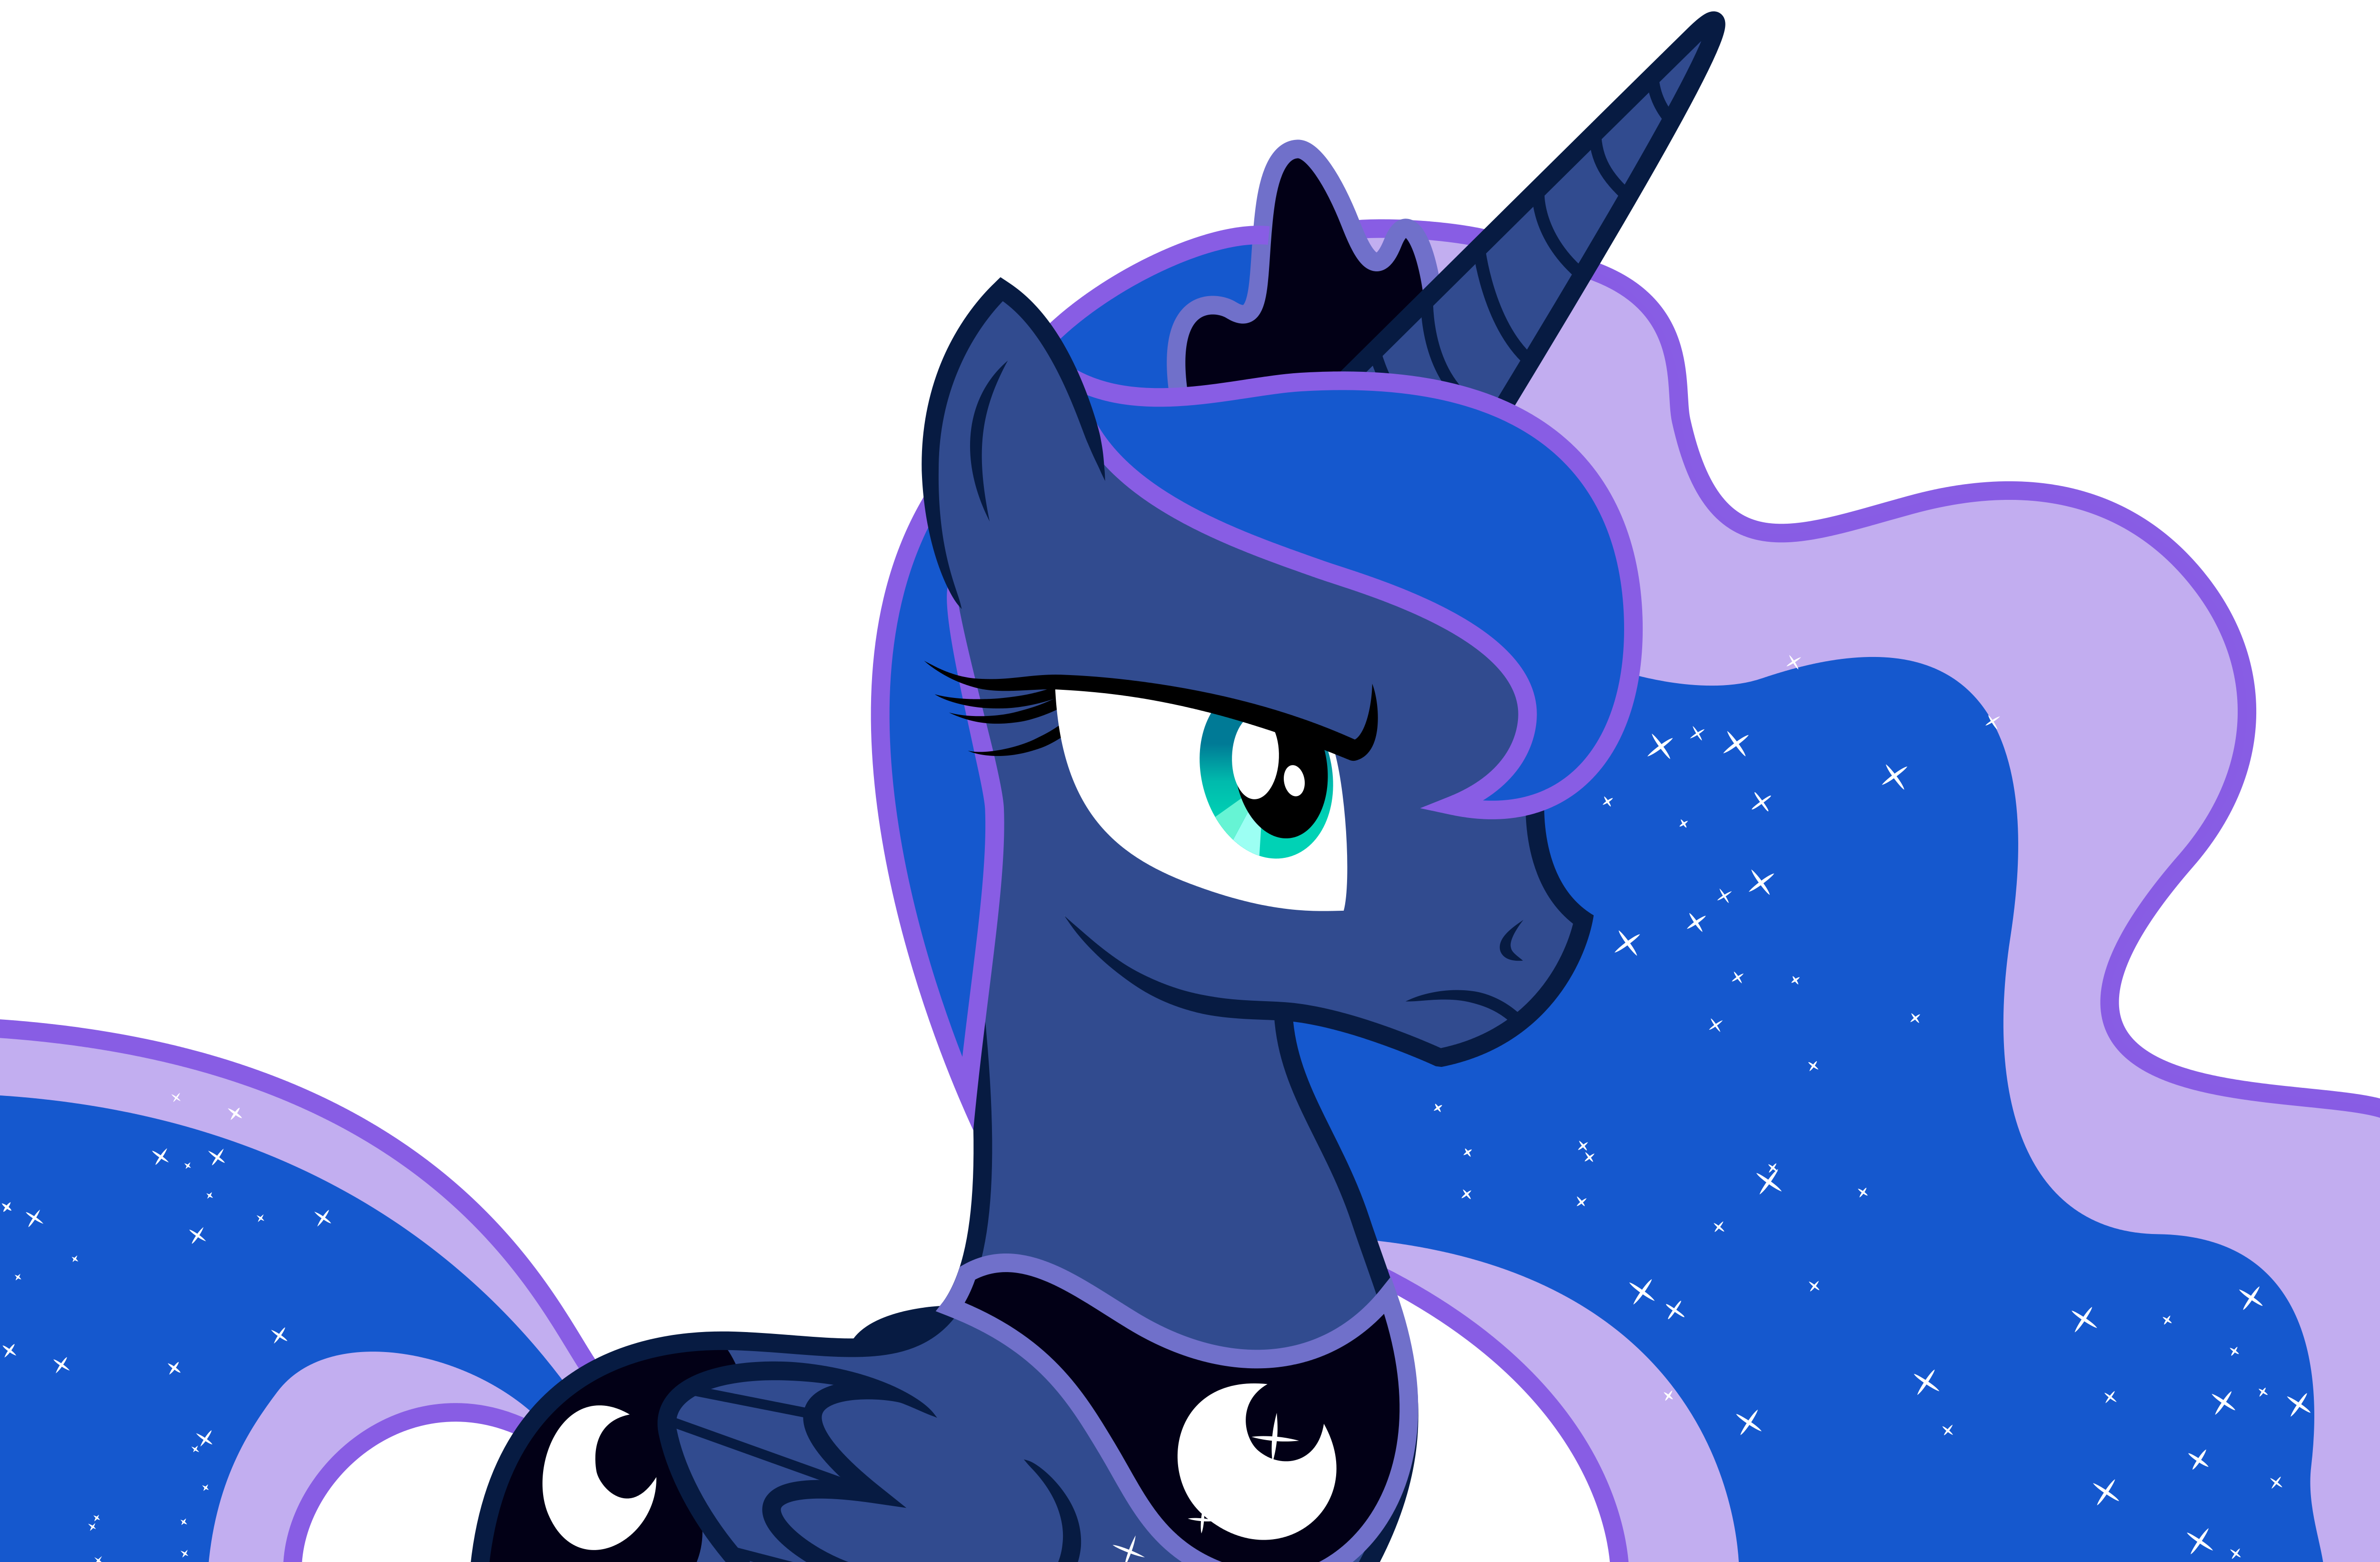 Vector #21 - Princess Luna #3 by DashieSparkle on DeviantArt